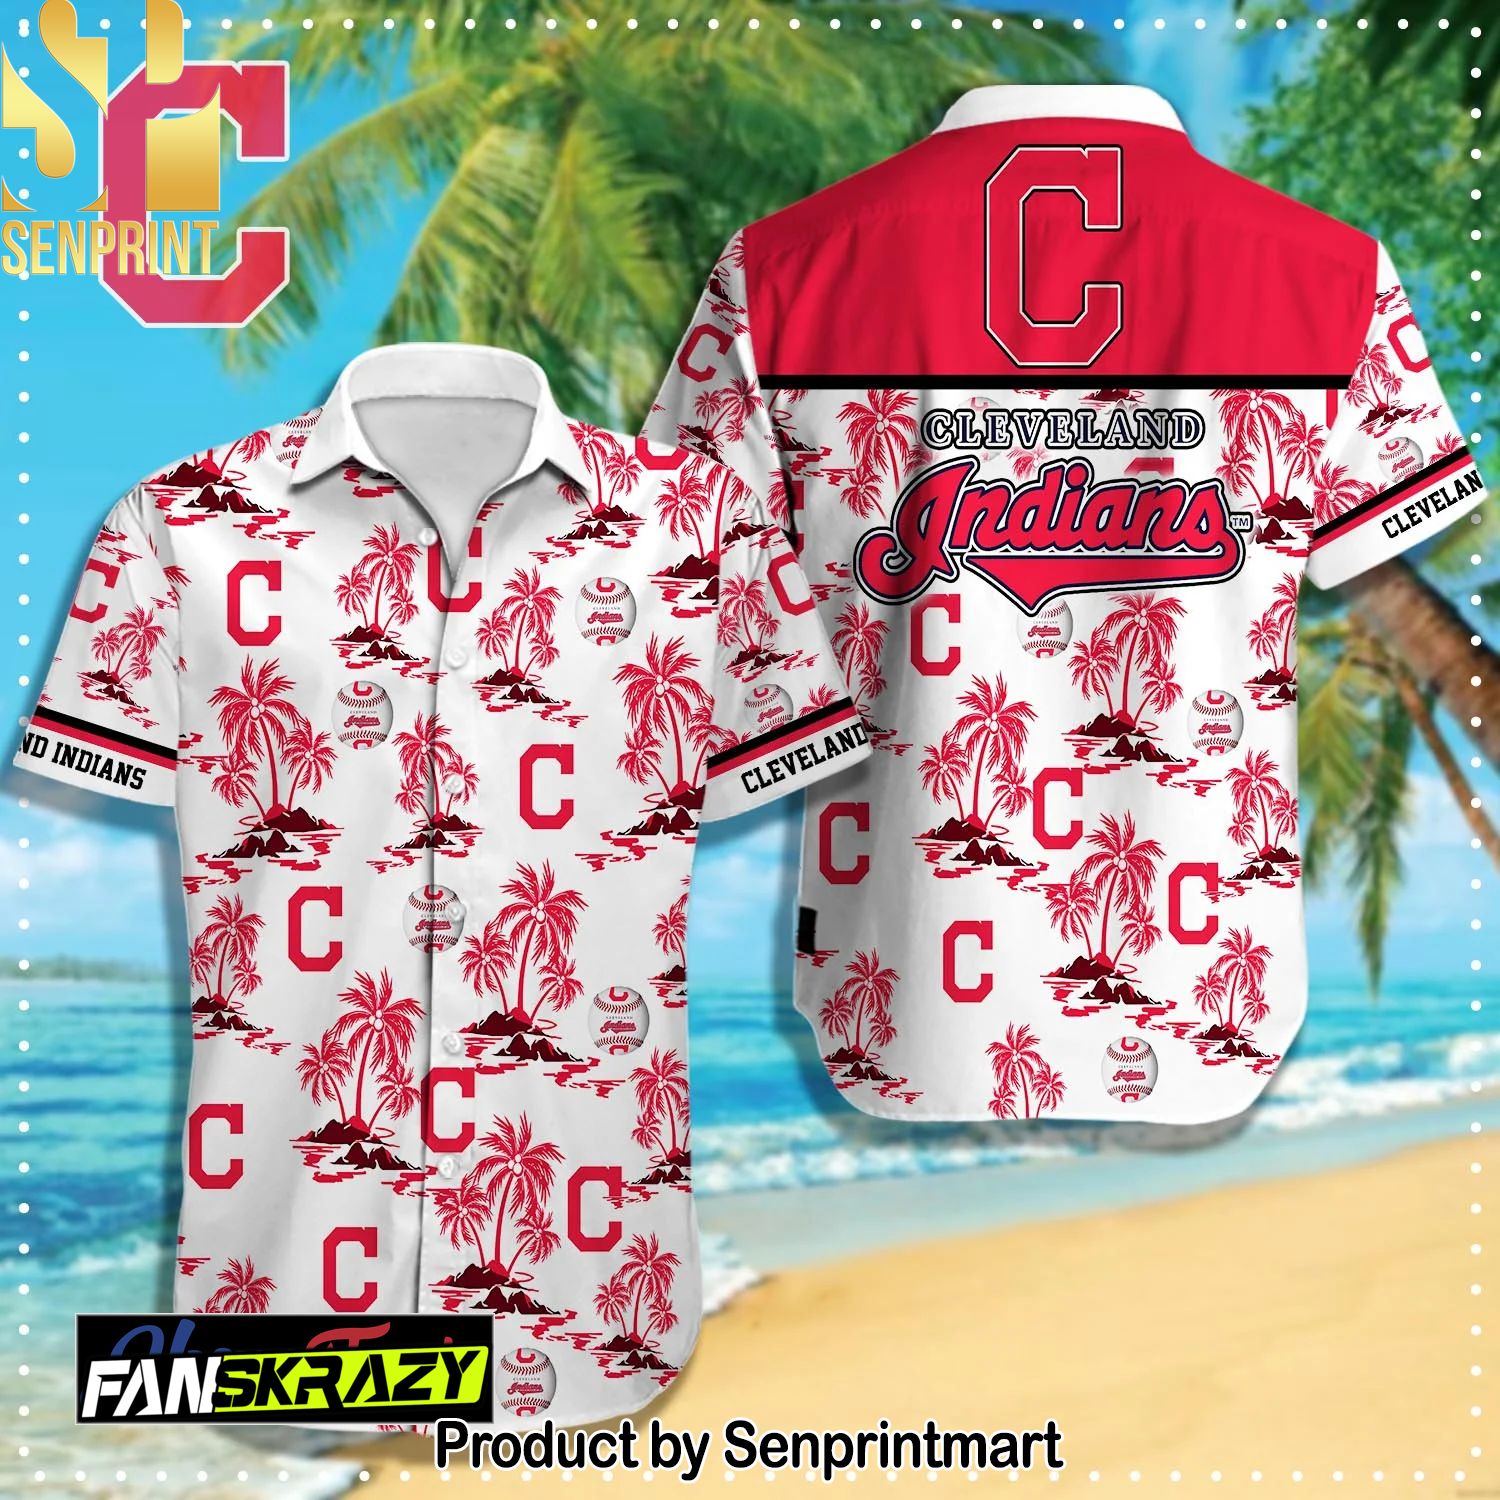 Cleveland Indians MLB Classic Full Print Hawaiian Shirt and Shorts